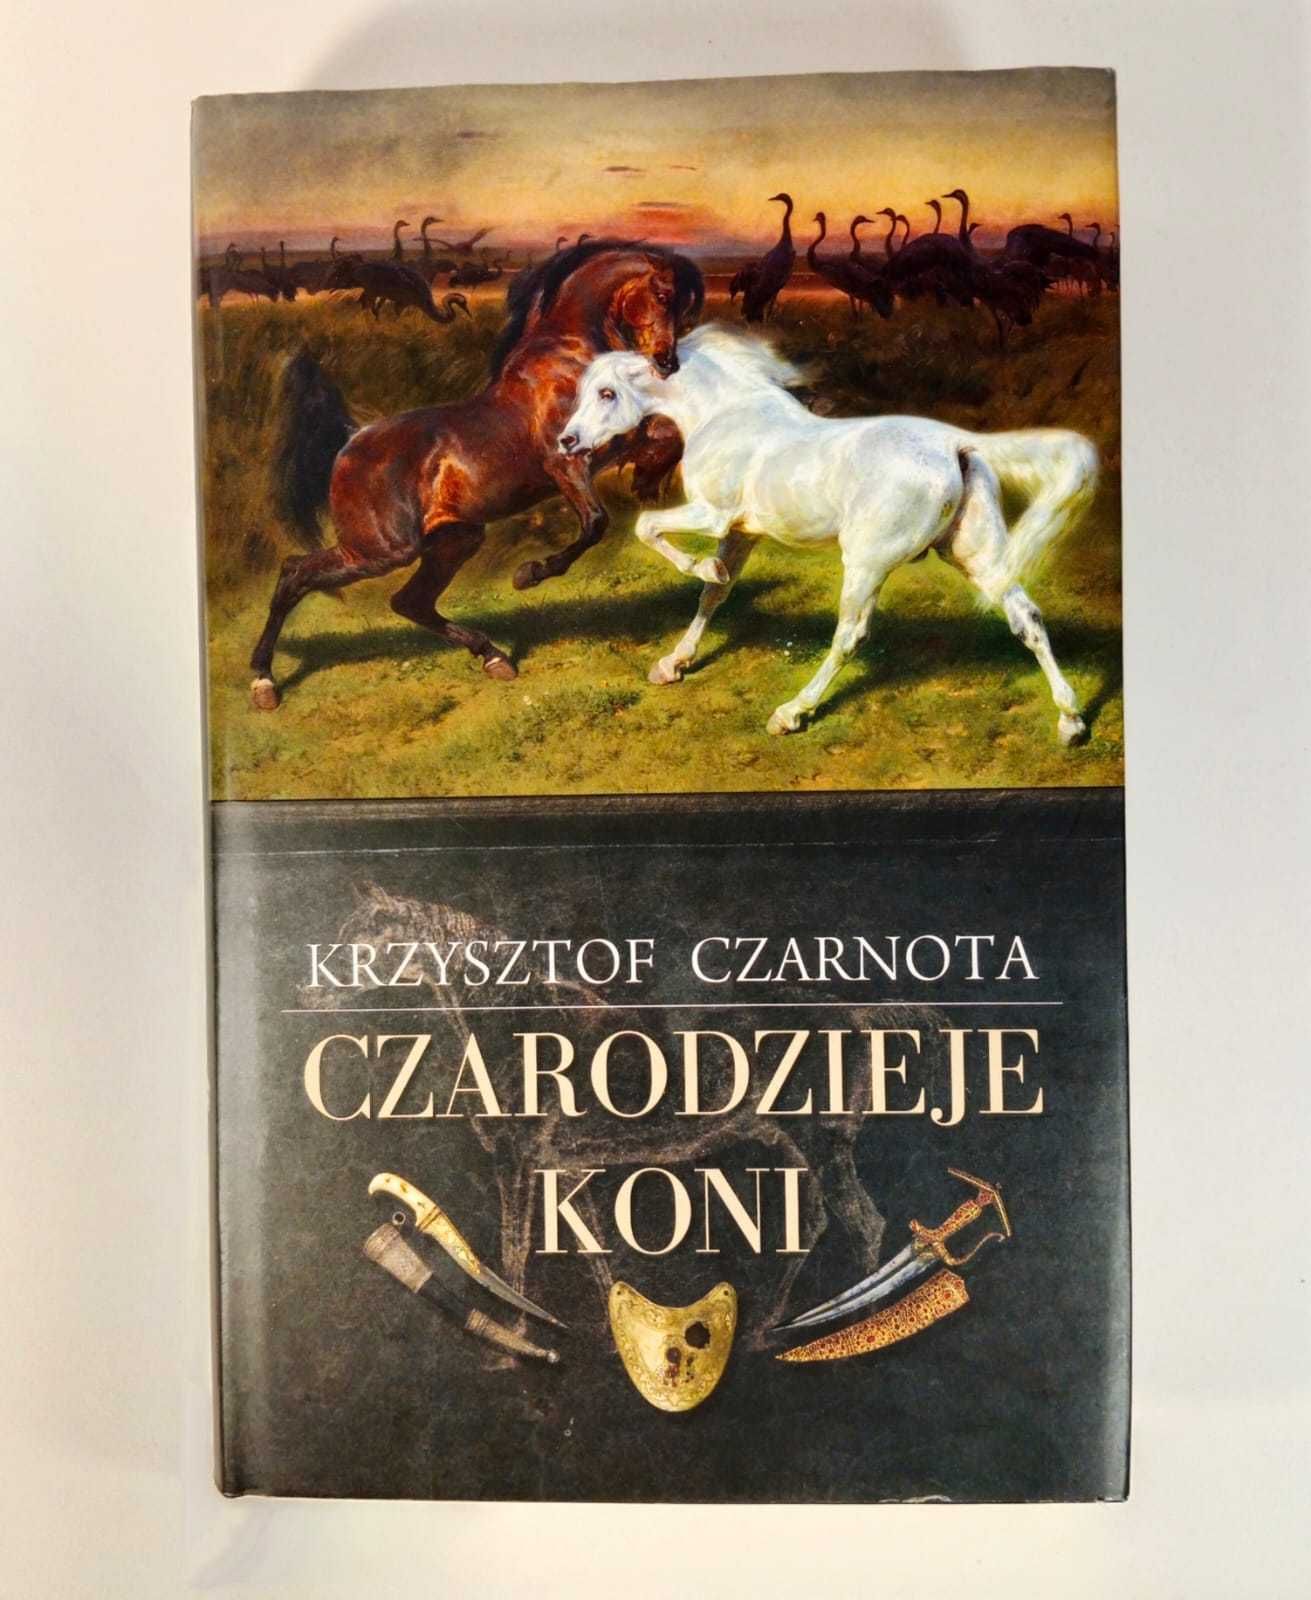 Książka Czarodzieje koni Krzysztof Czarnota